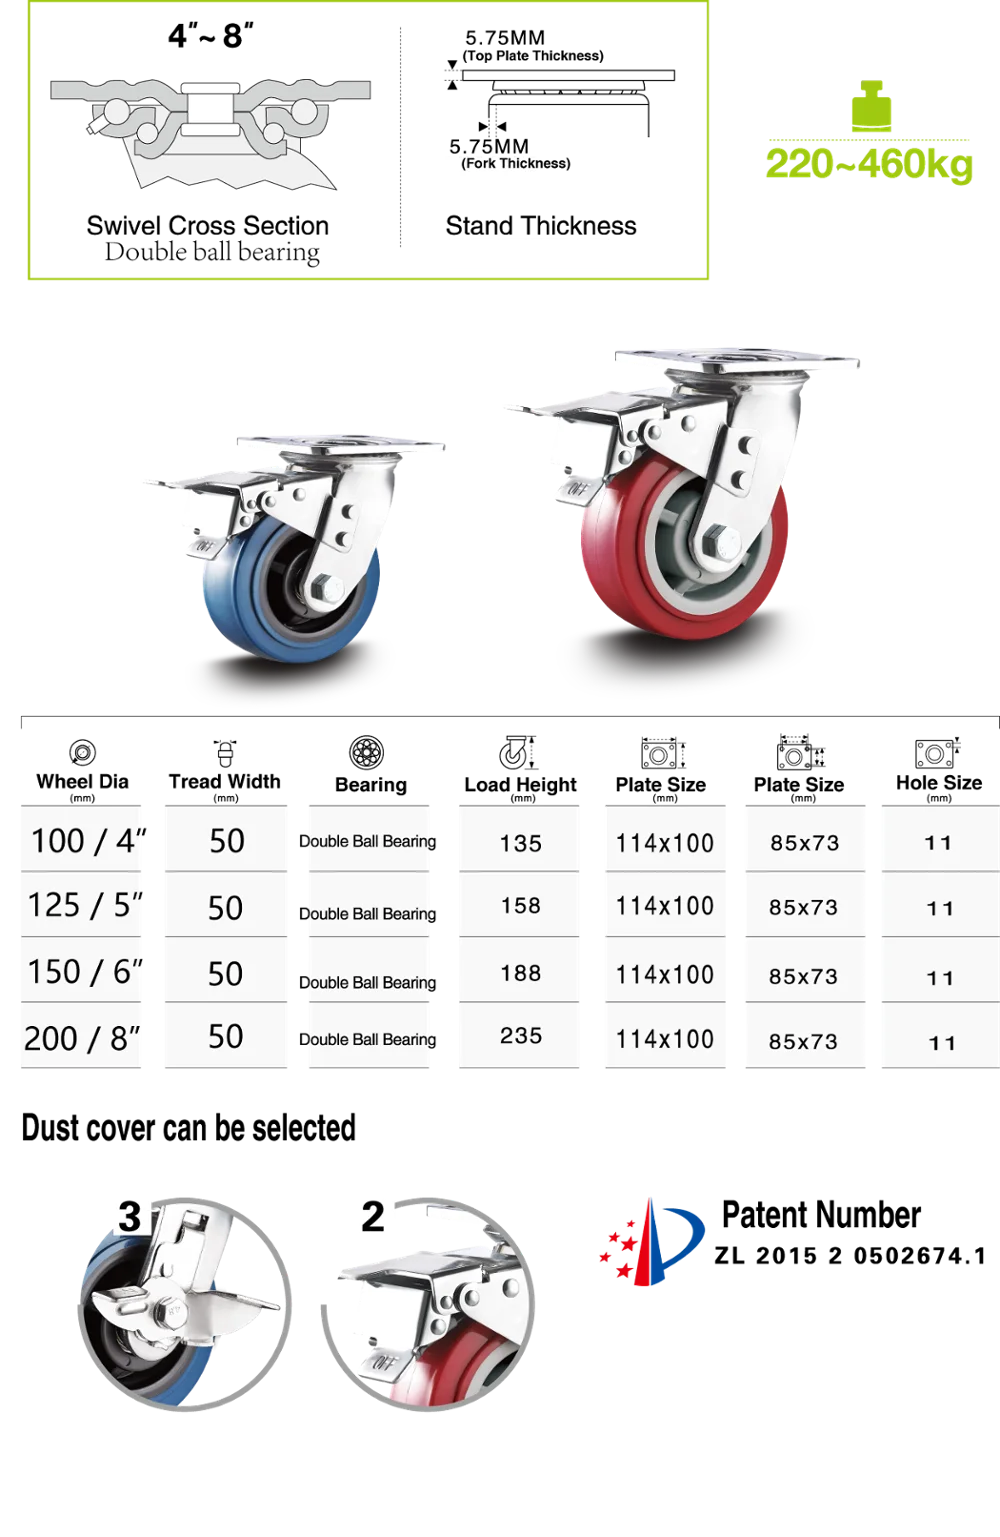 Double Brake Swivel Industrial 4 Inch Heavy Duty PU Caster Wheel